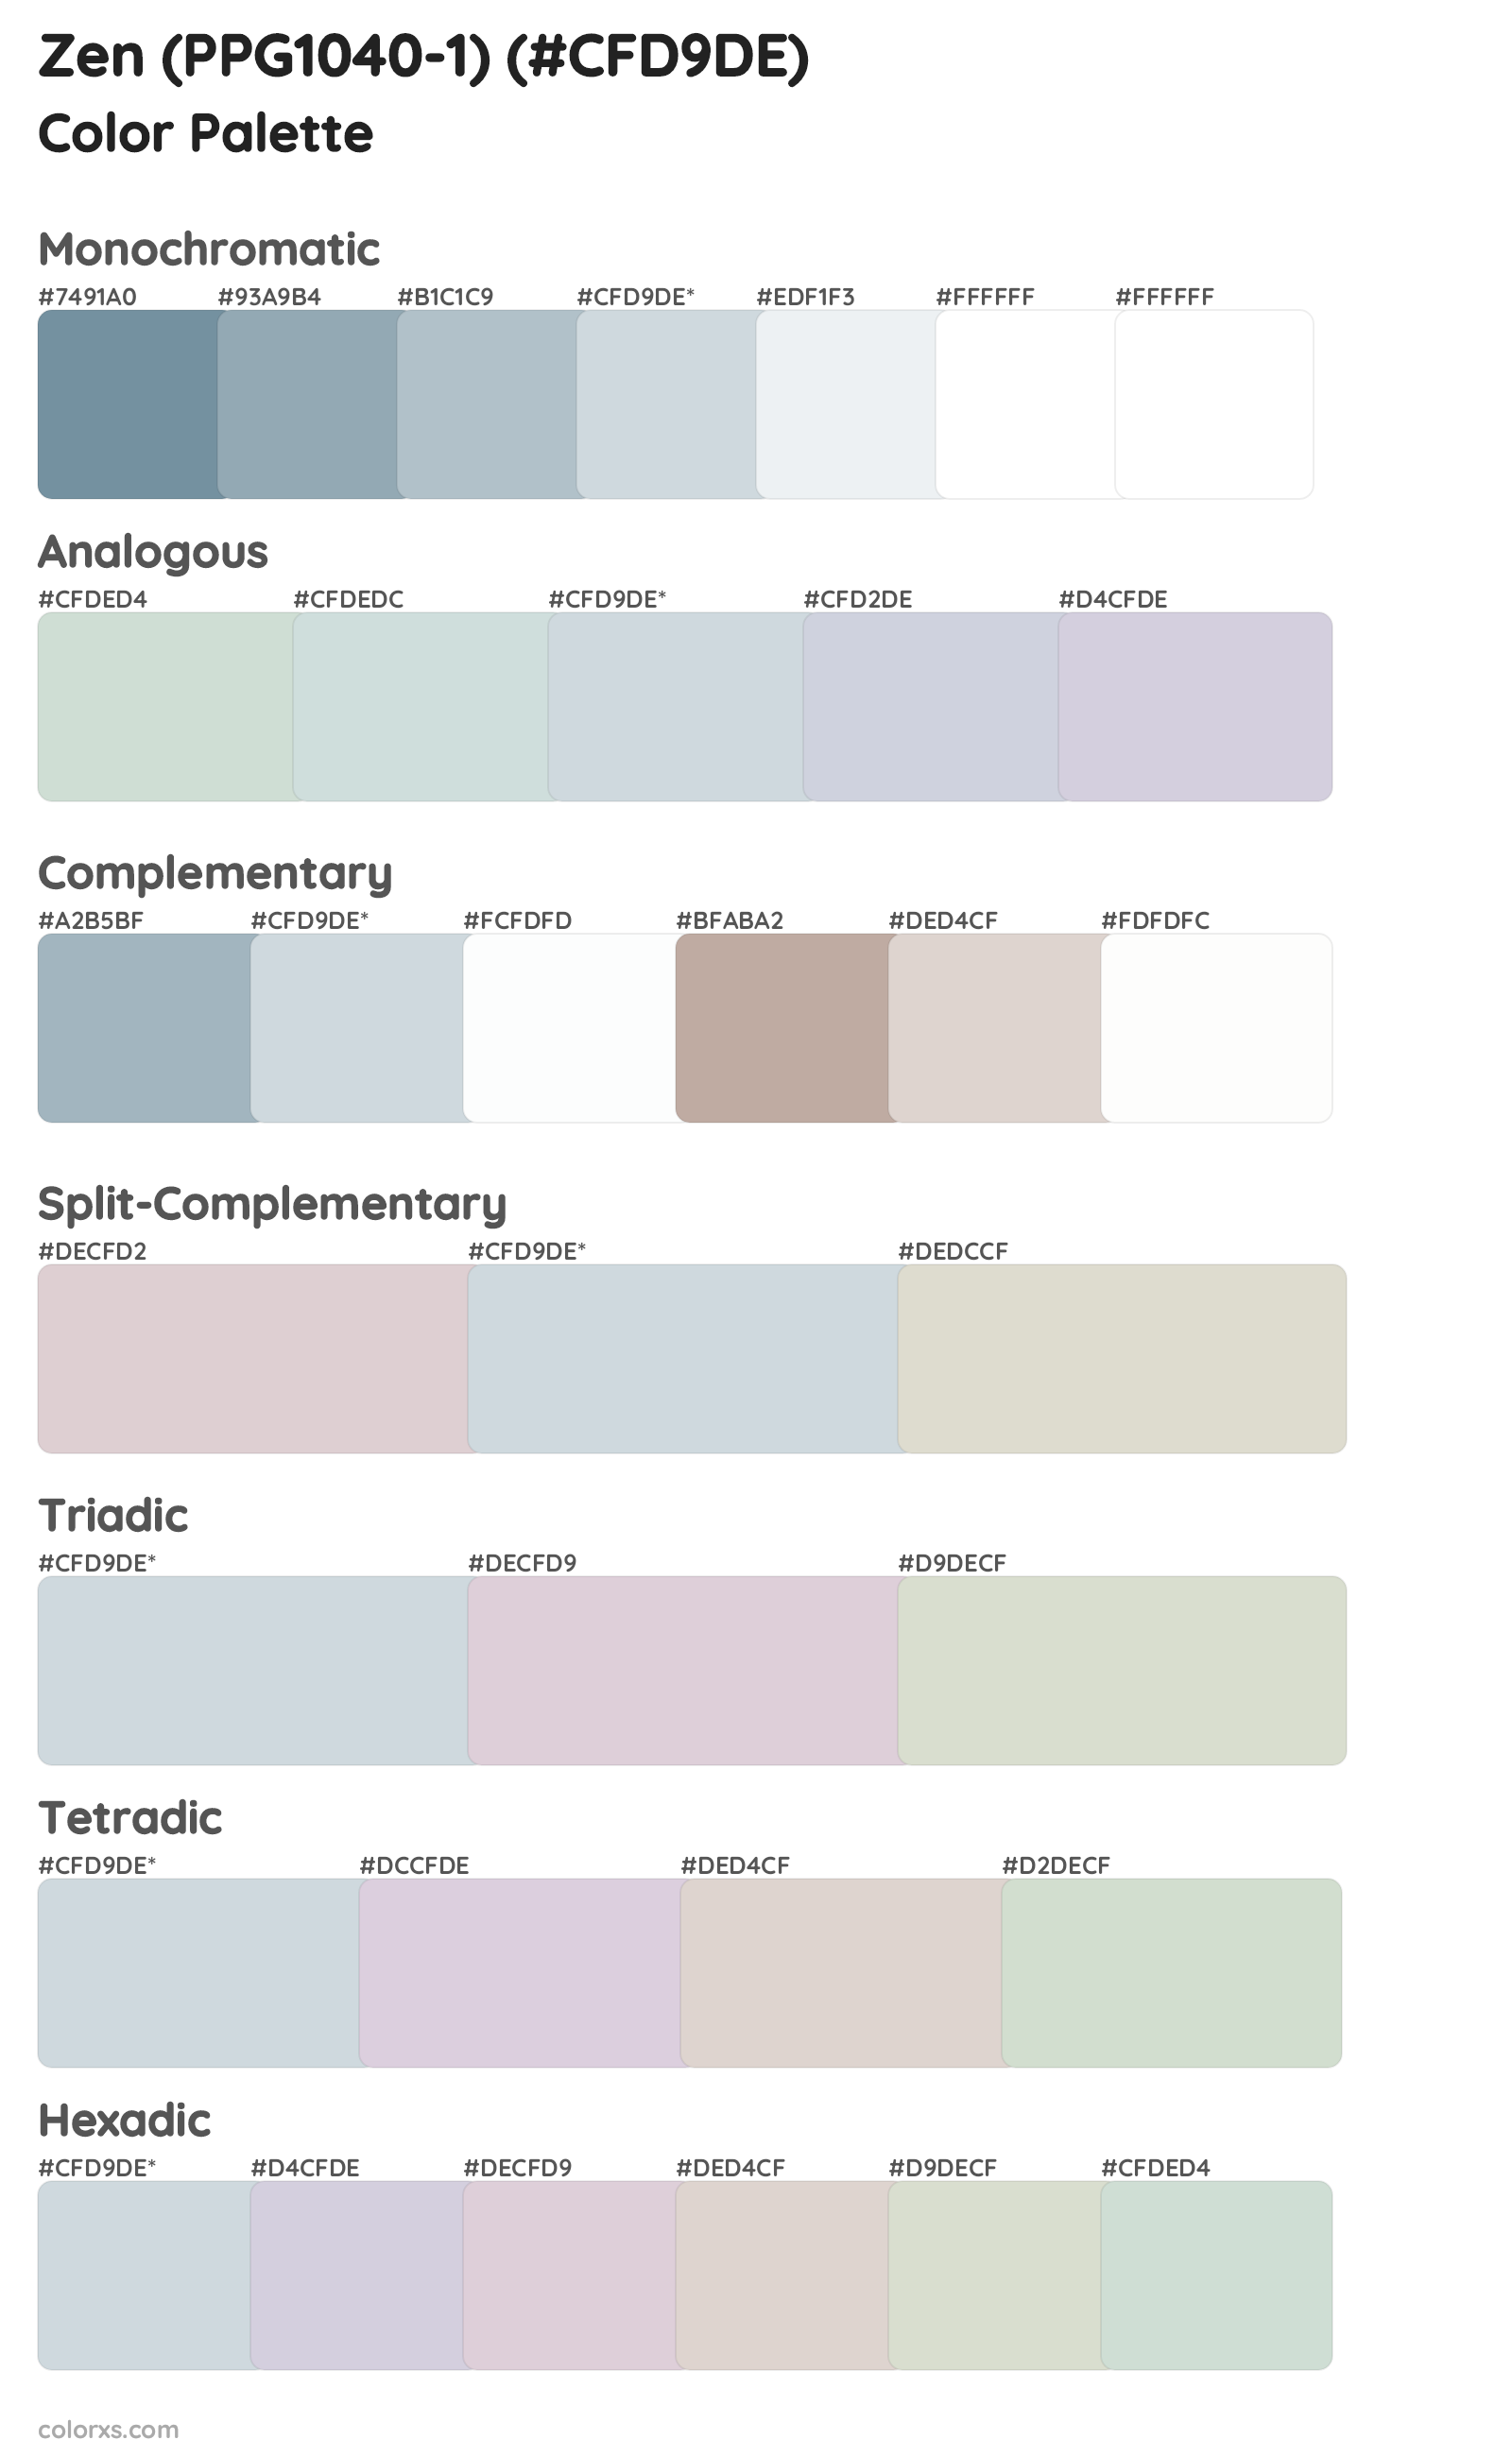 Zen (PPG1040-1) Color Scheme Palettes